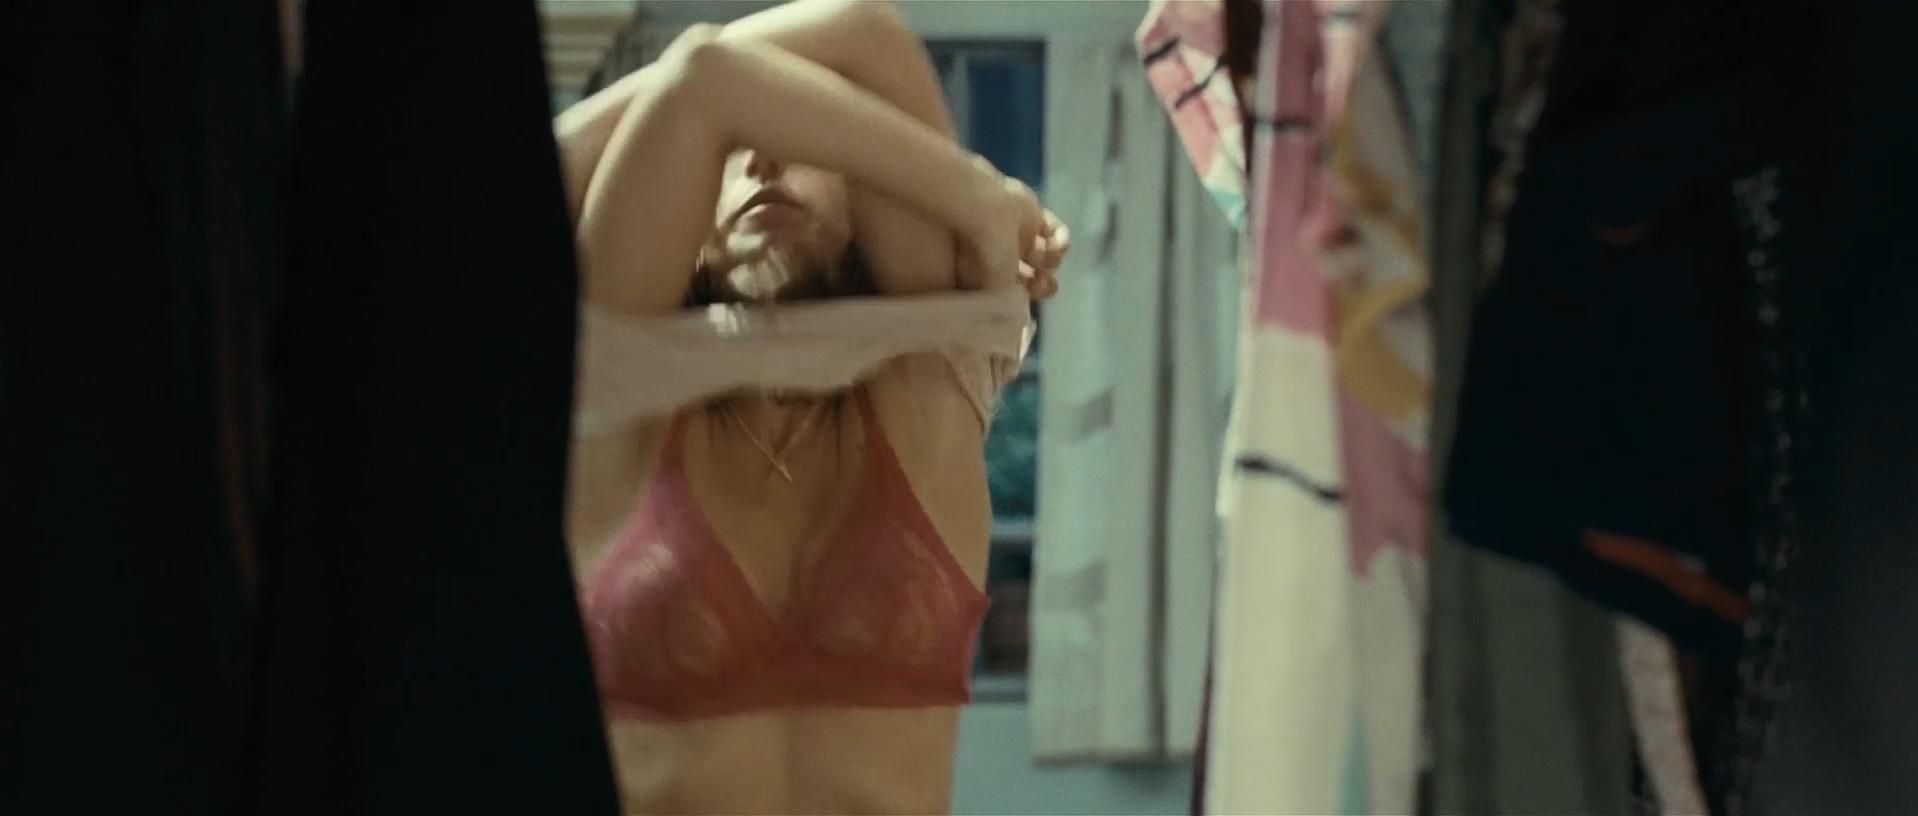 Nude Video Celebs Marta Etura Nude Sleep Tight 2011